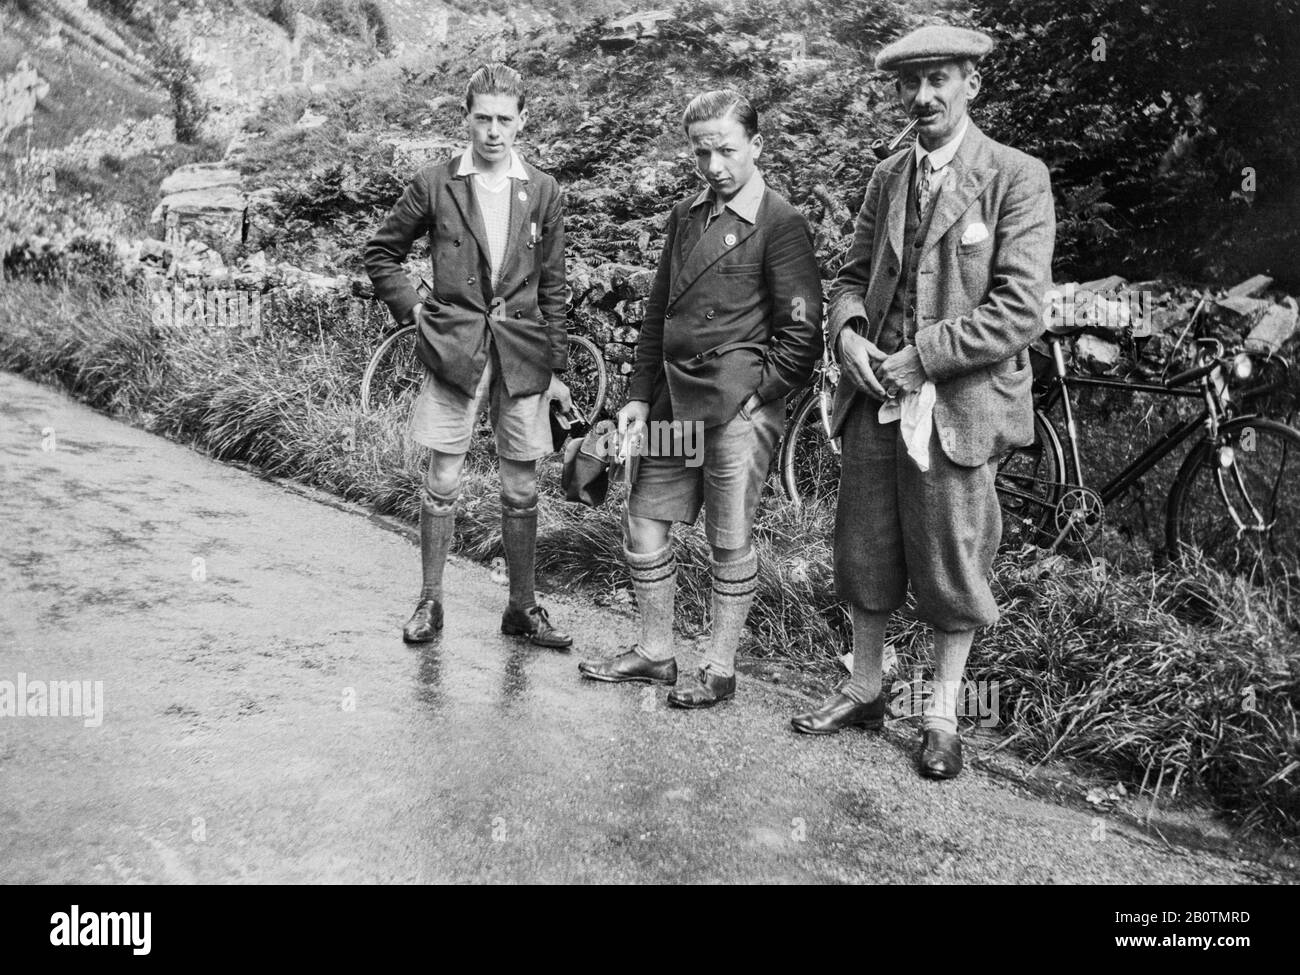 Drei Radfahrer stehen auf einer nassen Fahrbahn, die für ein Foto posiert. Zwei halten Cmeras, einer raucht ein Rohr. Derbyshire um 1920 Stockfoto